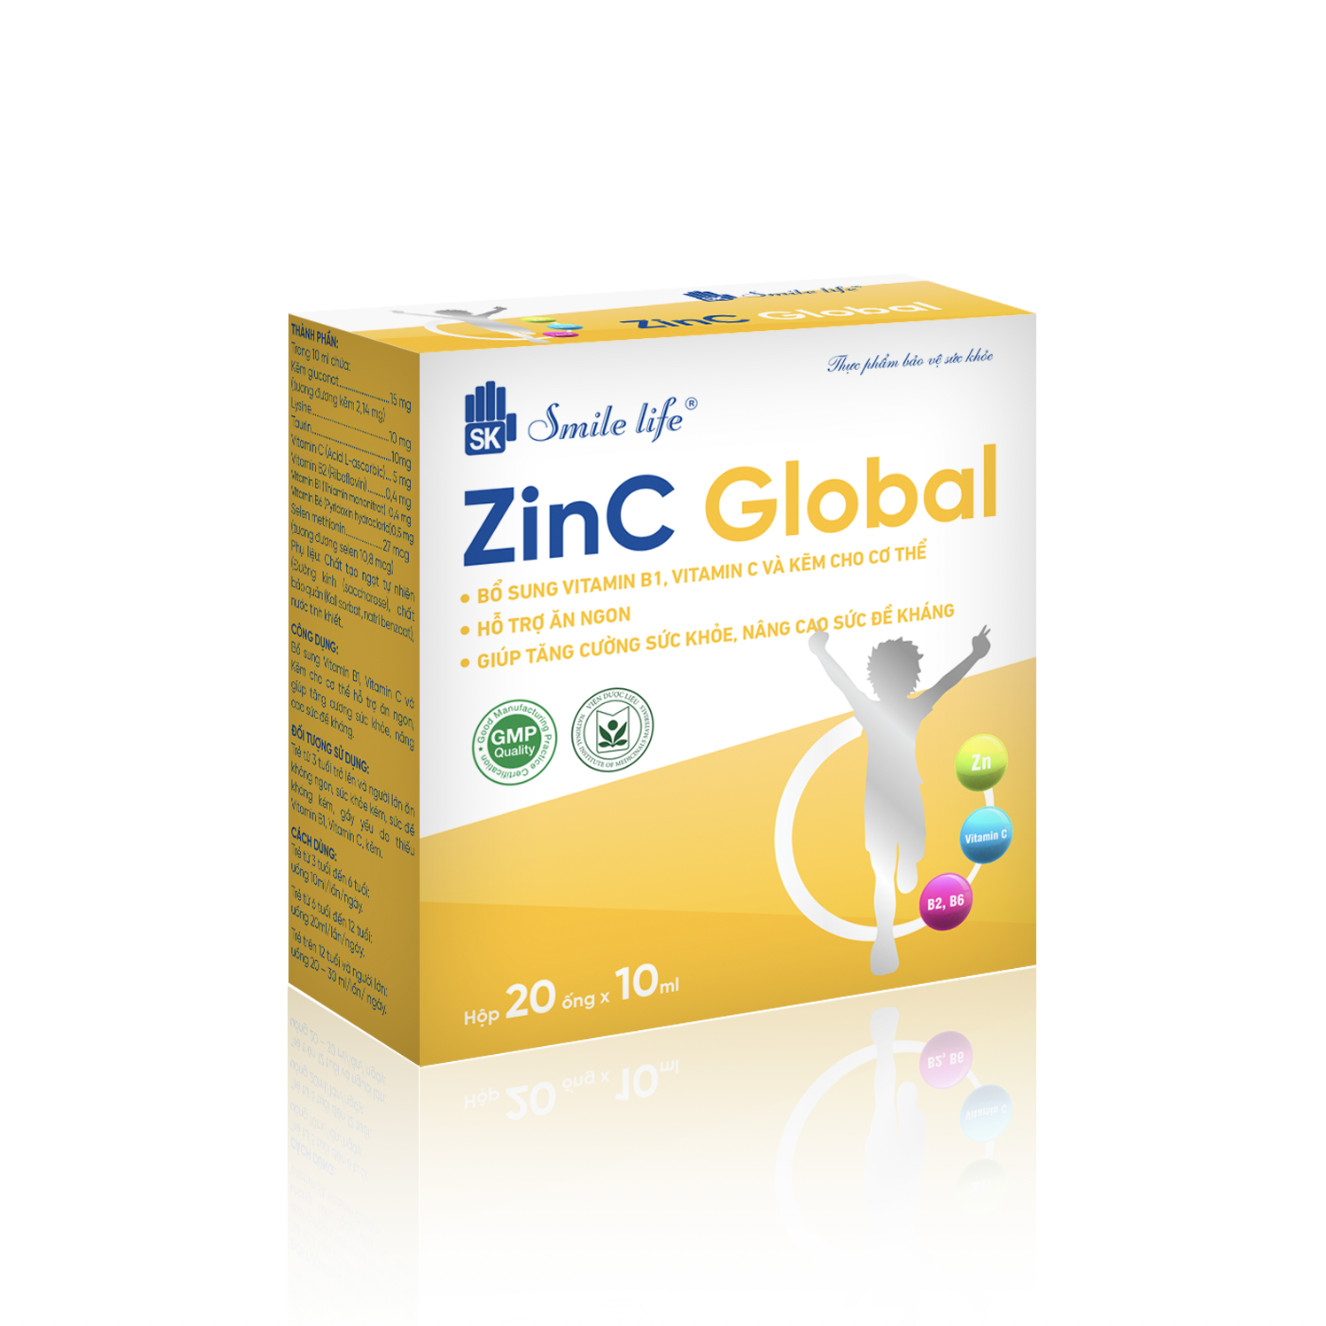 Sản phẩm Zinc Global - Thực Phẩm Chức Năng Toàn Cầu - Công Ty TNHH TM Toàn Cầu